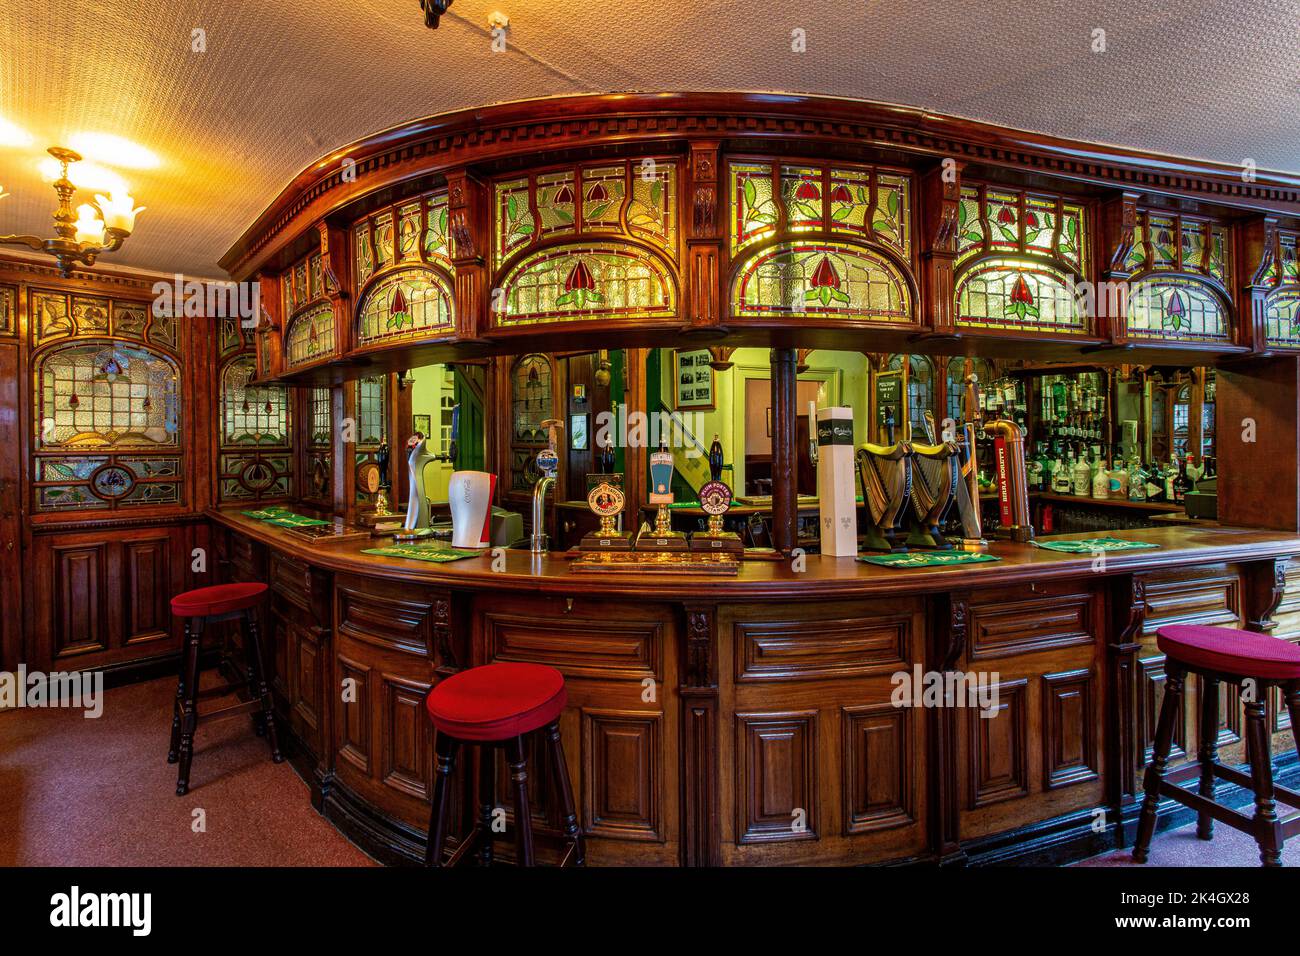 El Peveril of the Peak es un pub inglés tradicional de la ciudad, situado en Great Bridgewater Street, Manchester, Reino Unido Foto de stock